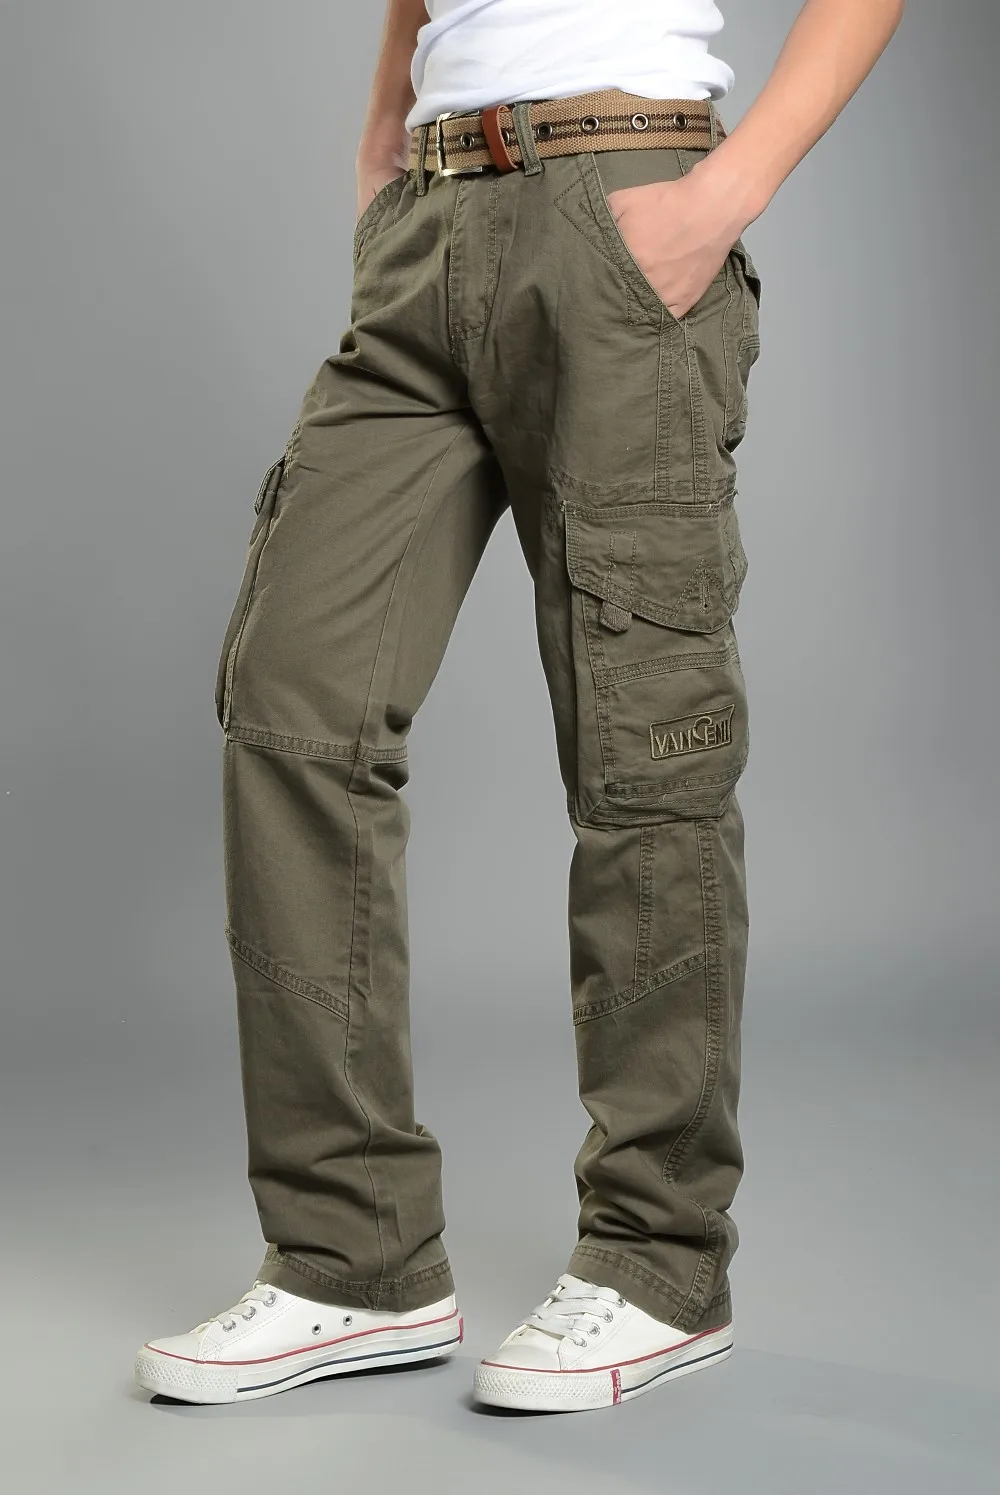 Прочные брюки-карго Для мужчин Боевая Спецодежда армейские военные брюки хлопок Мульти Карманы стрейч Для мужчин s свободные прямые